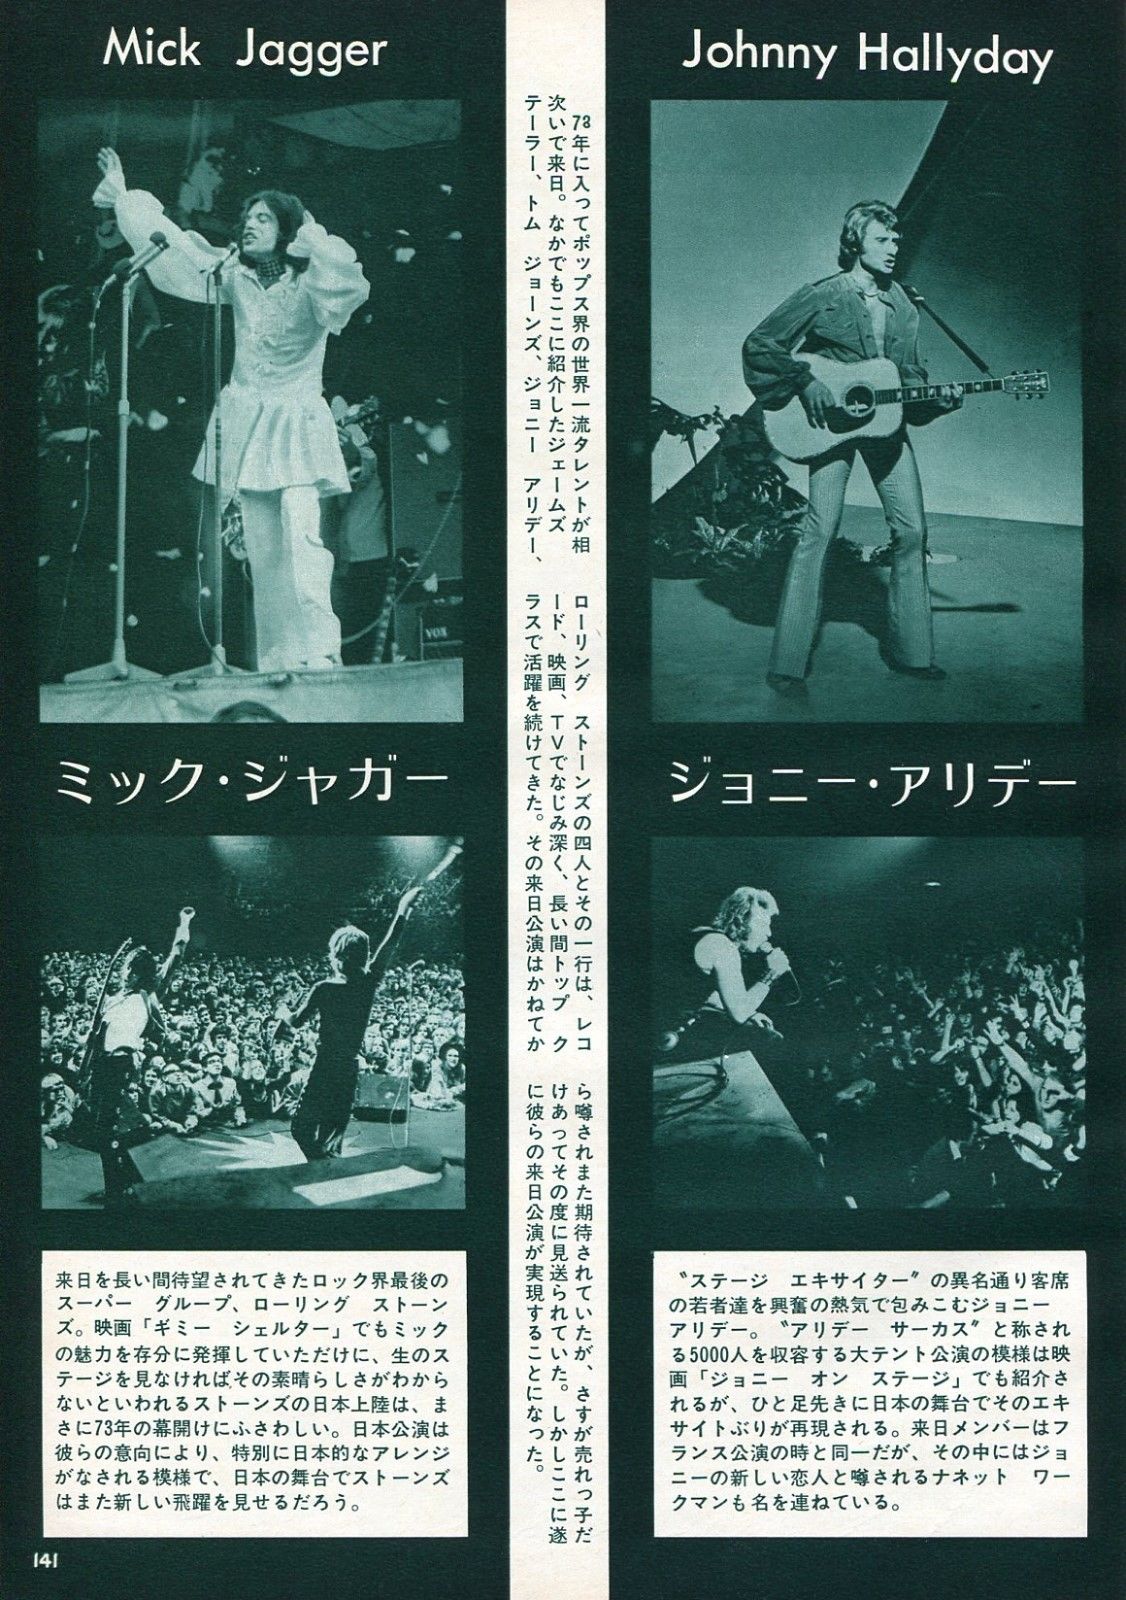 Article japonais 1973 annonçant les concerts de Johnny Hallyday, les Rolling Stones